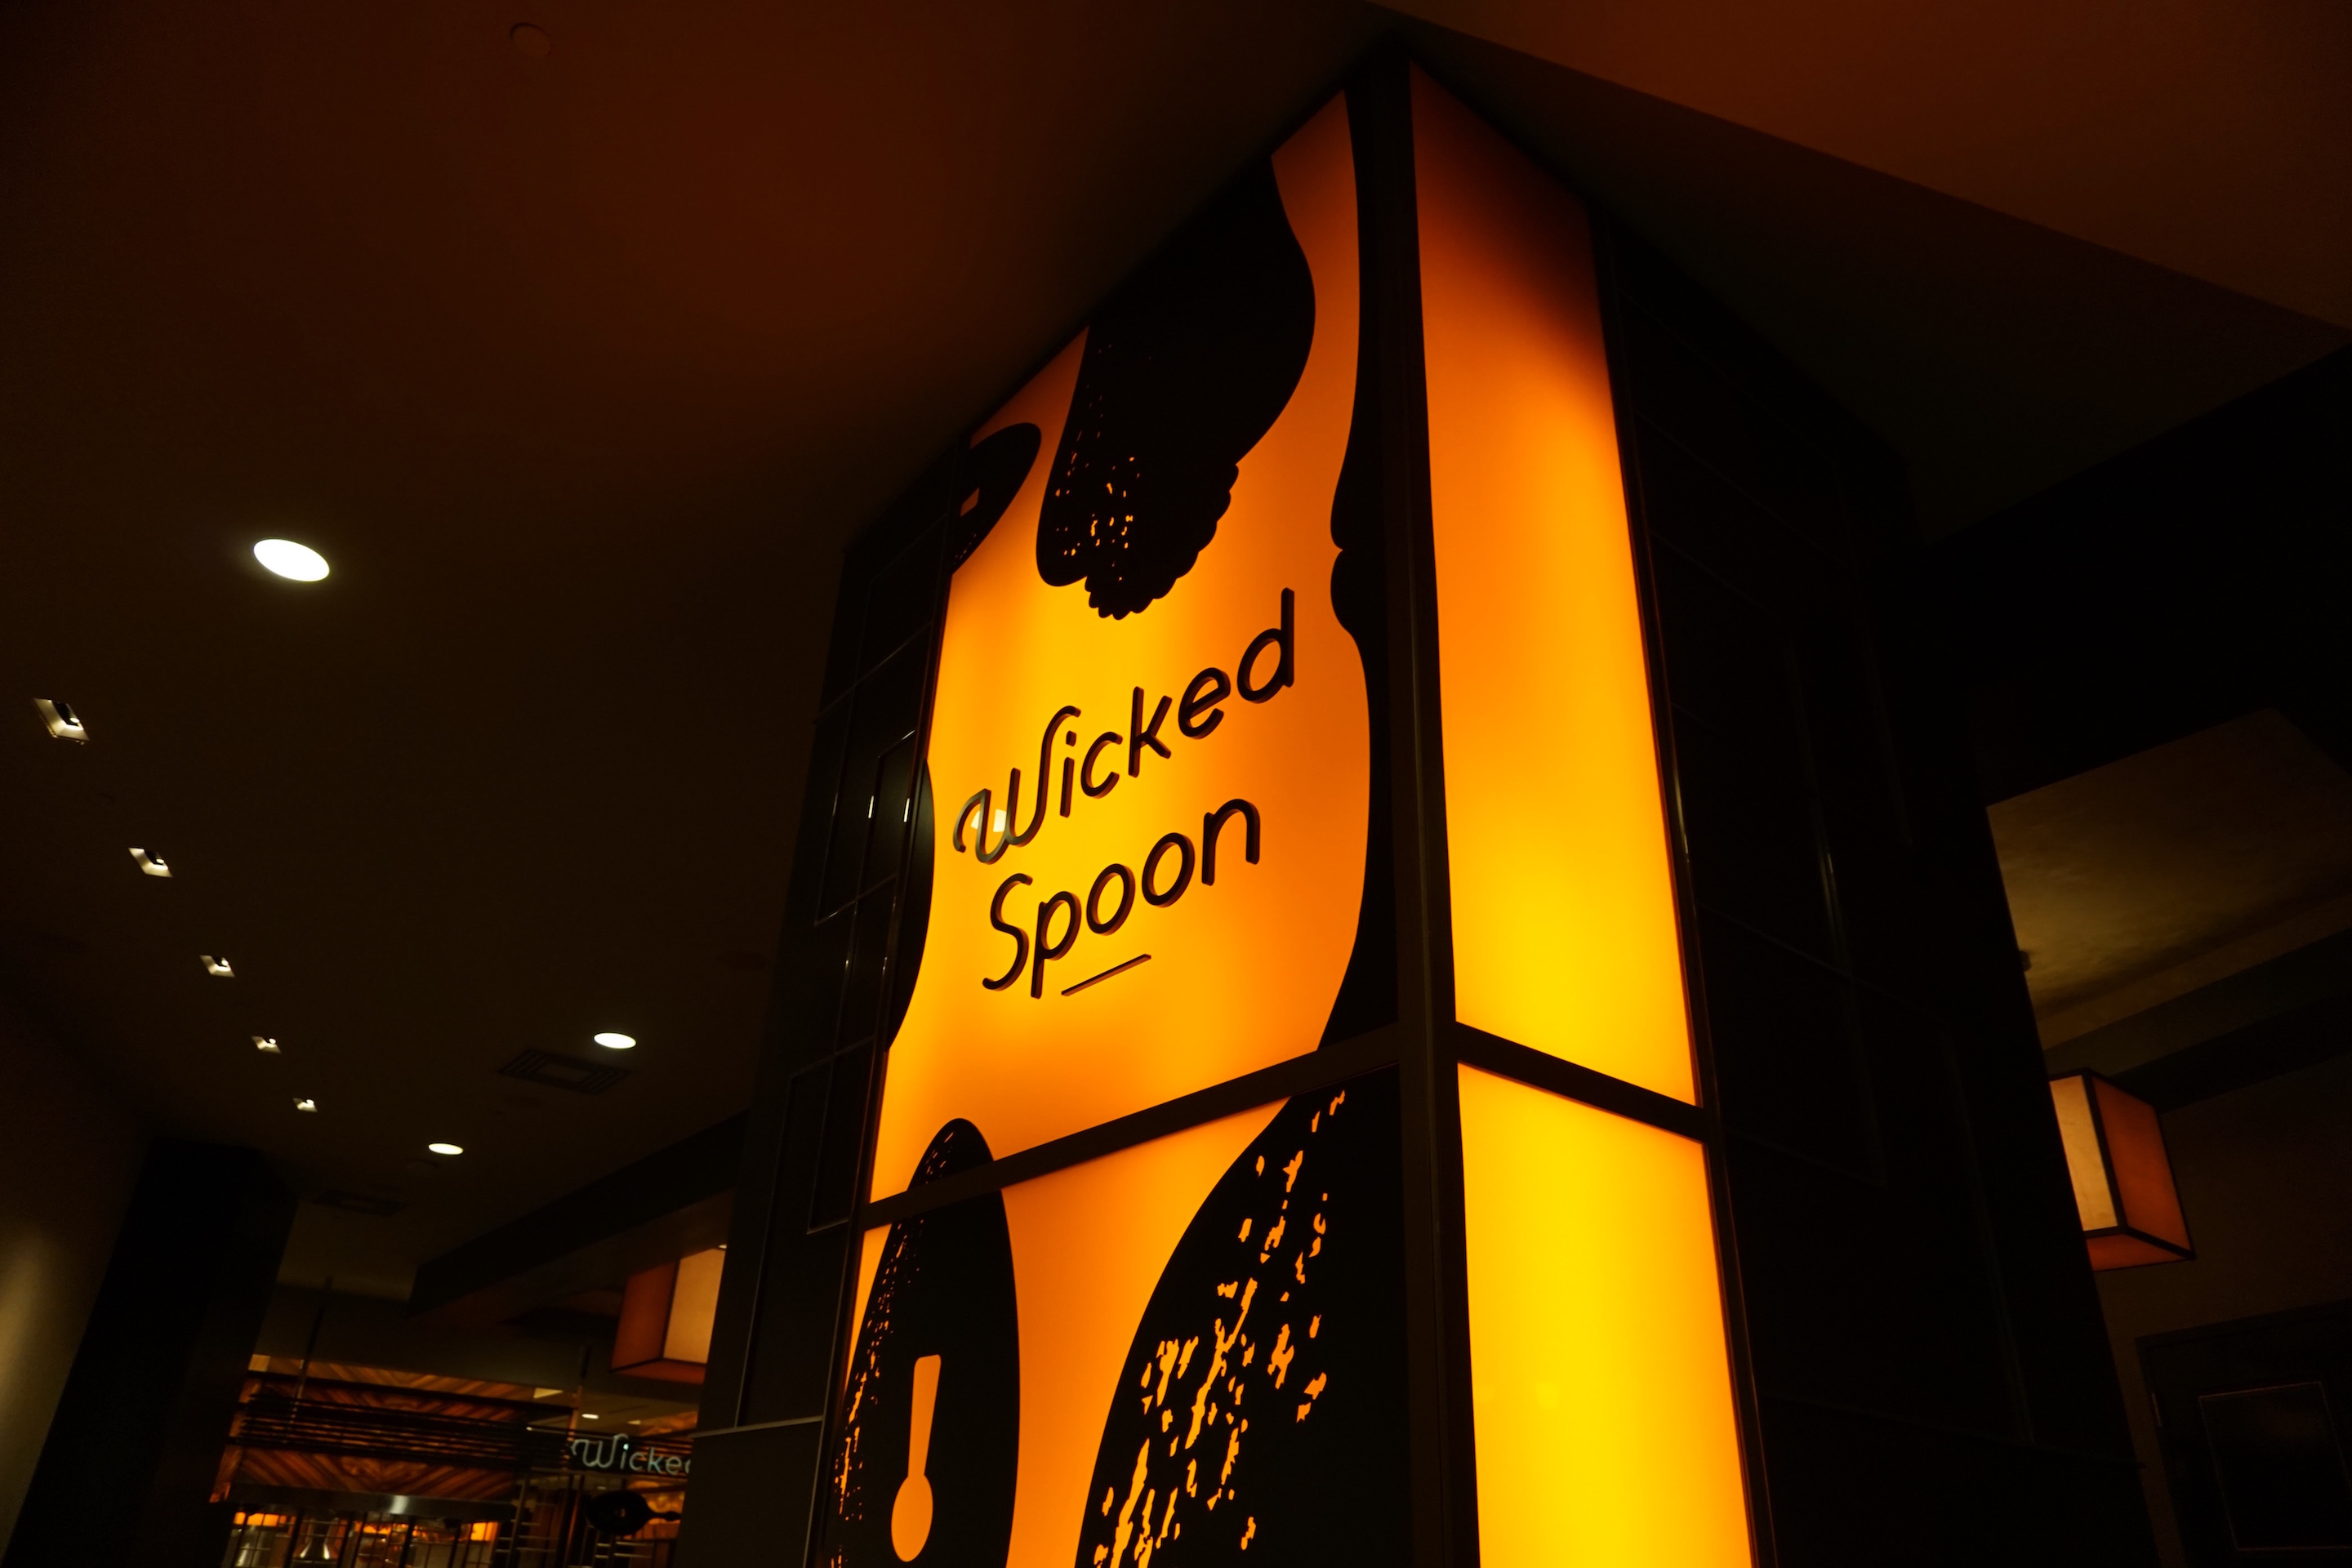 ร้านบุฟเฟต์ Wicked Spoon